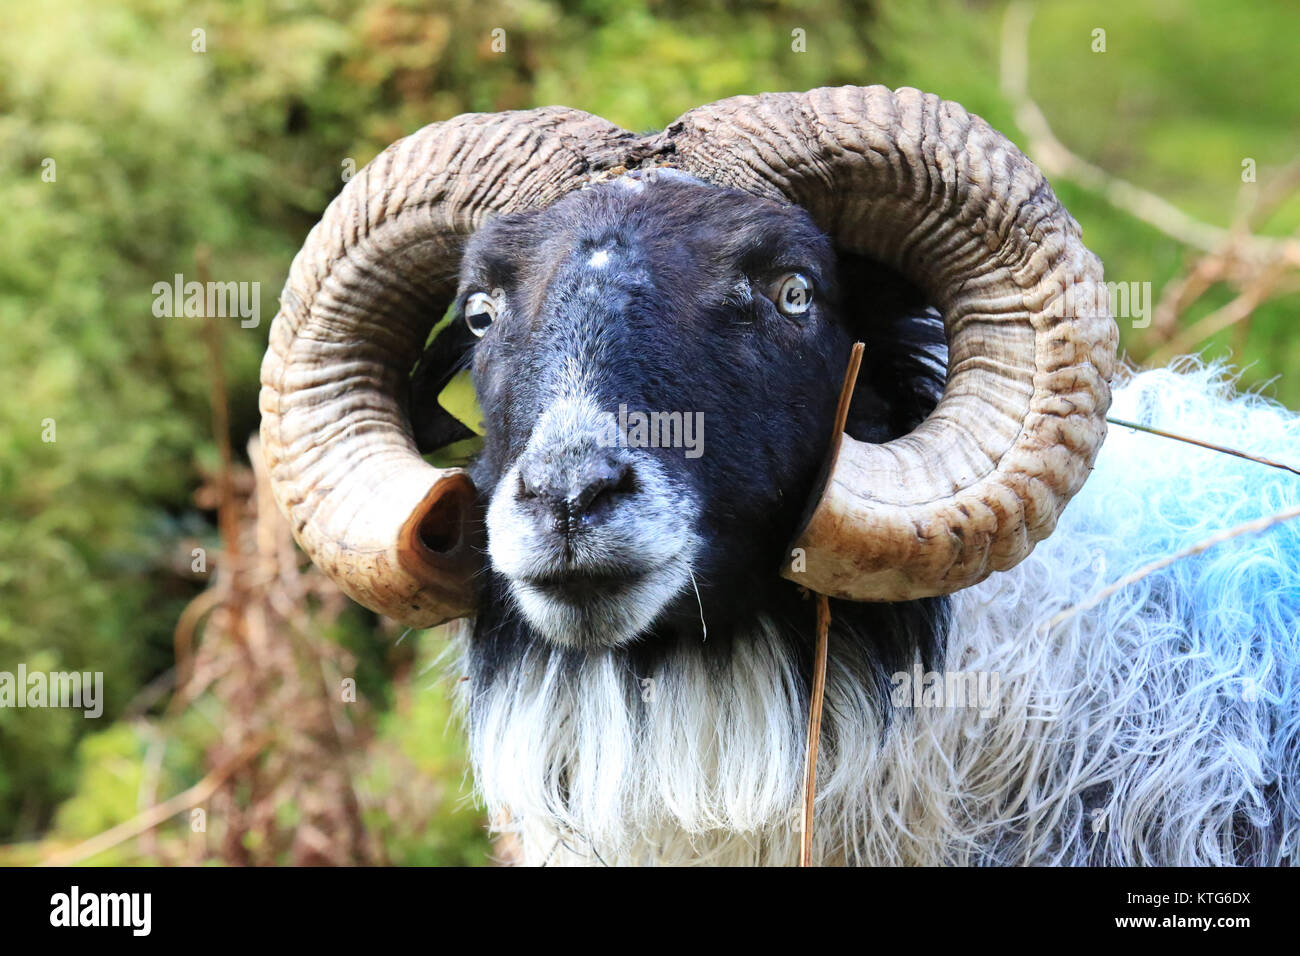 Ram moutons en habitat naturel en Irlande Banque D'Images